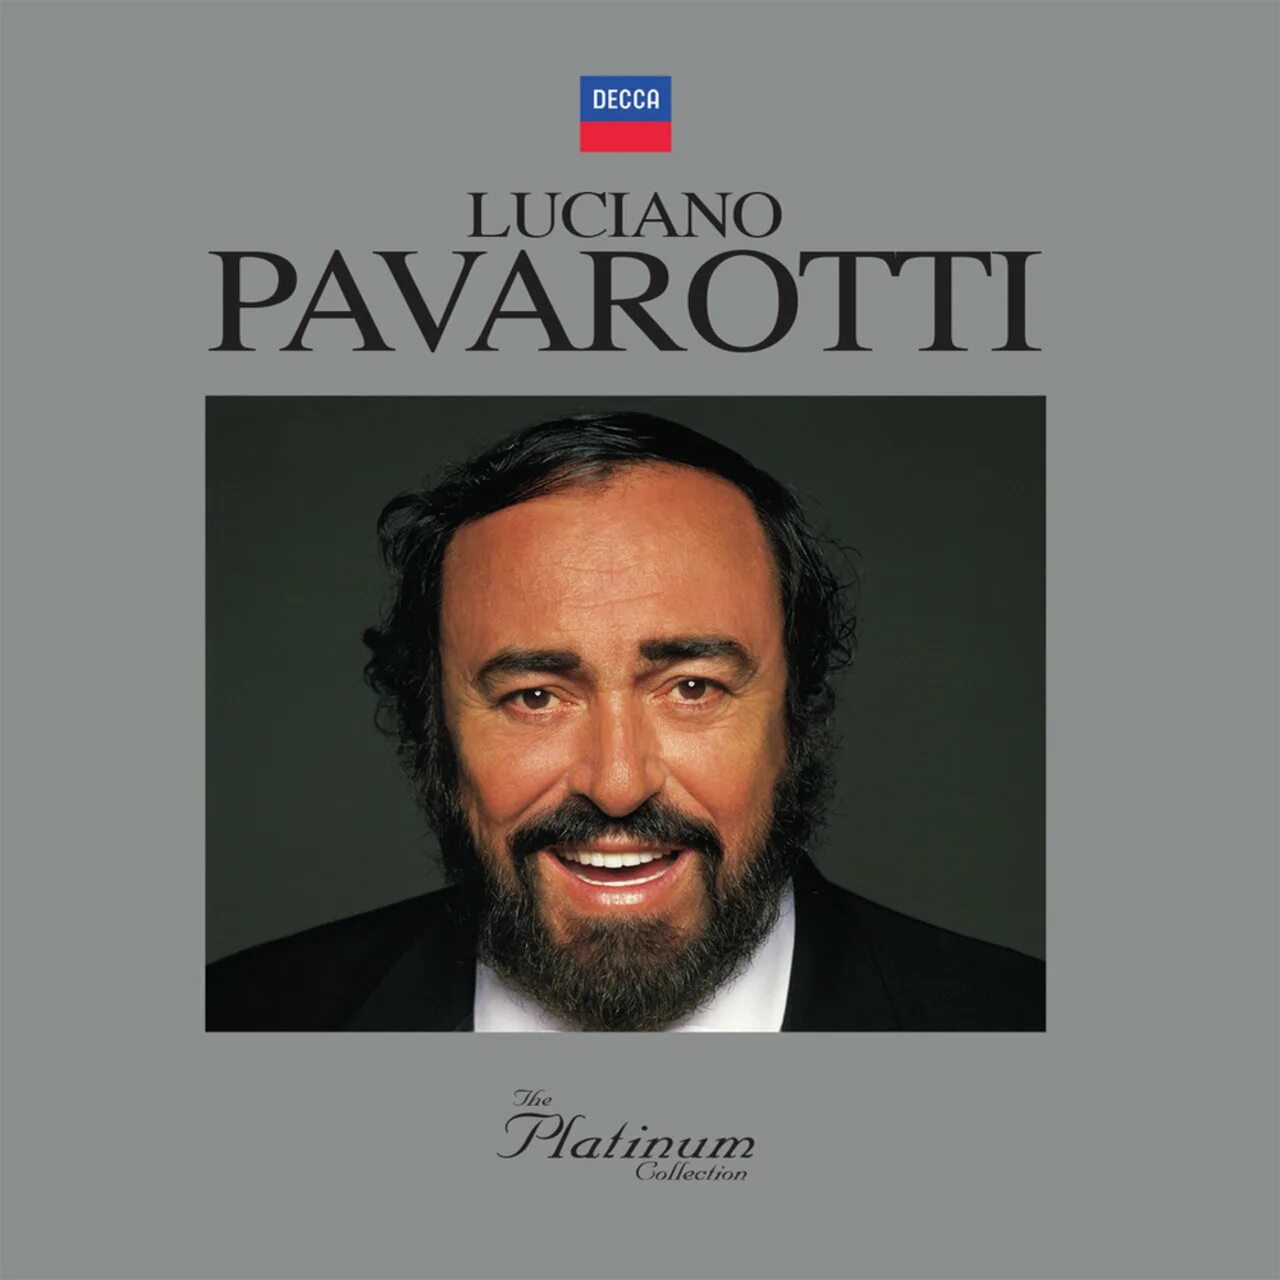 Лучано Паваротти. Лучано Паваротти три. Pavarotti обложки альбомов. Сообщение о Лучано Паваротти. Памяти лучано паваротти слушать